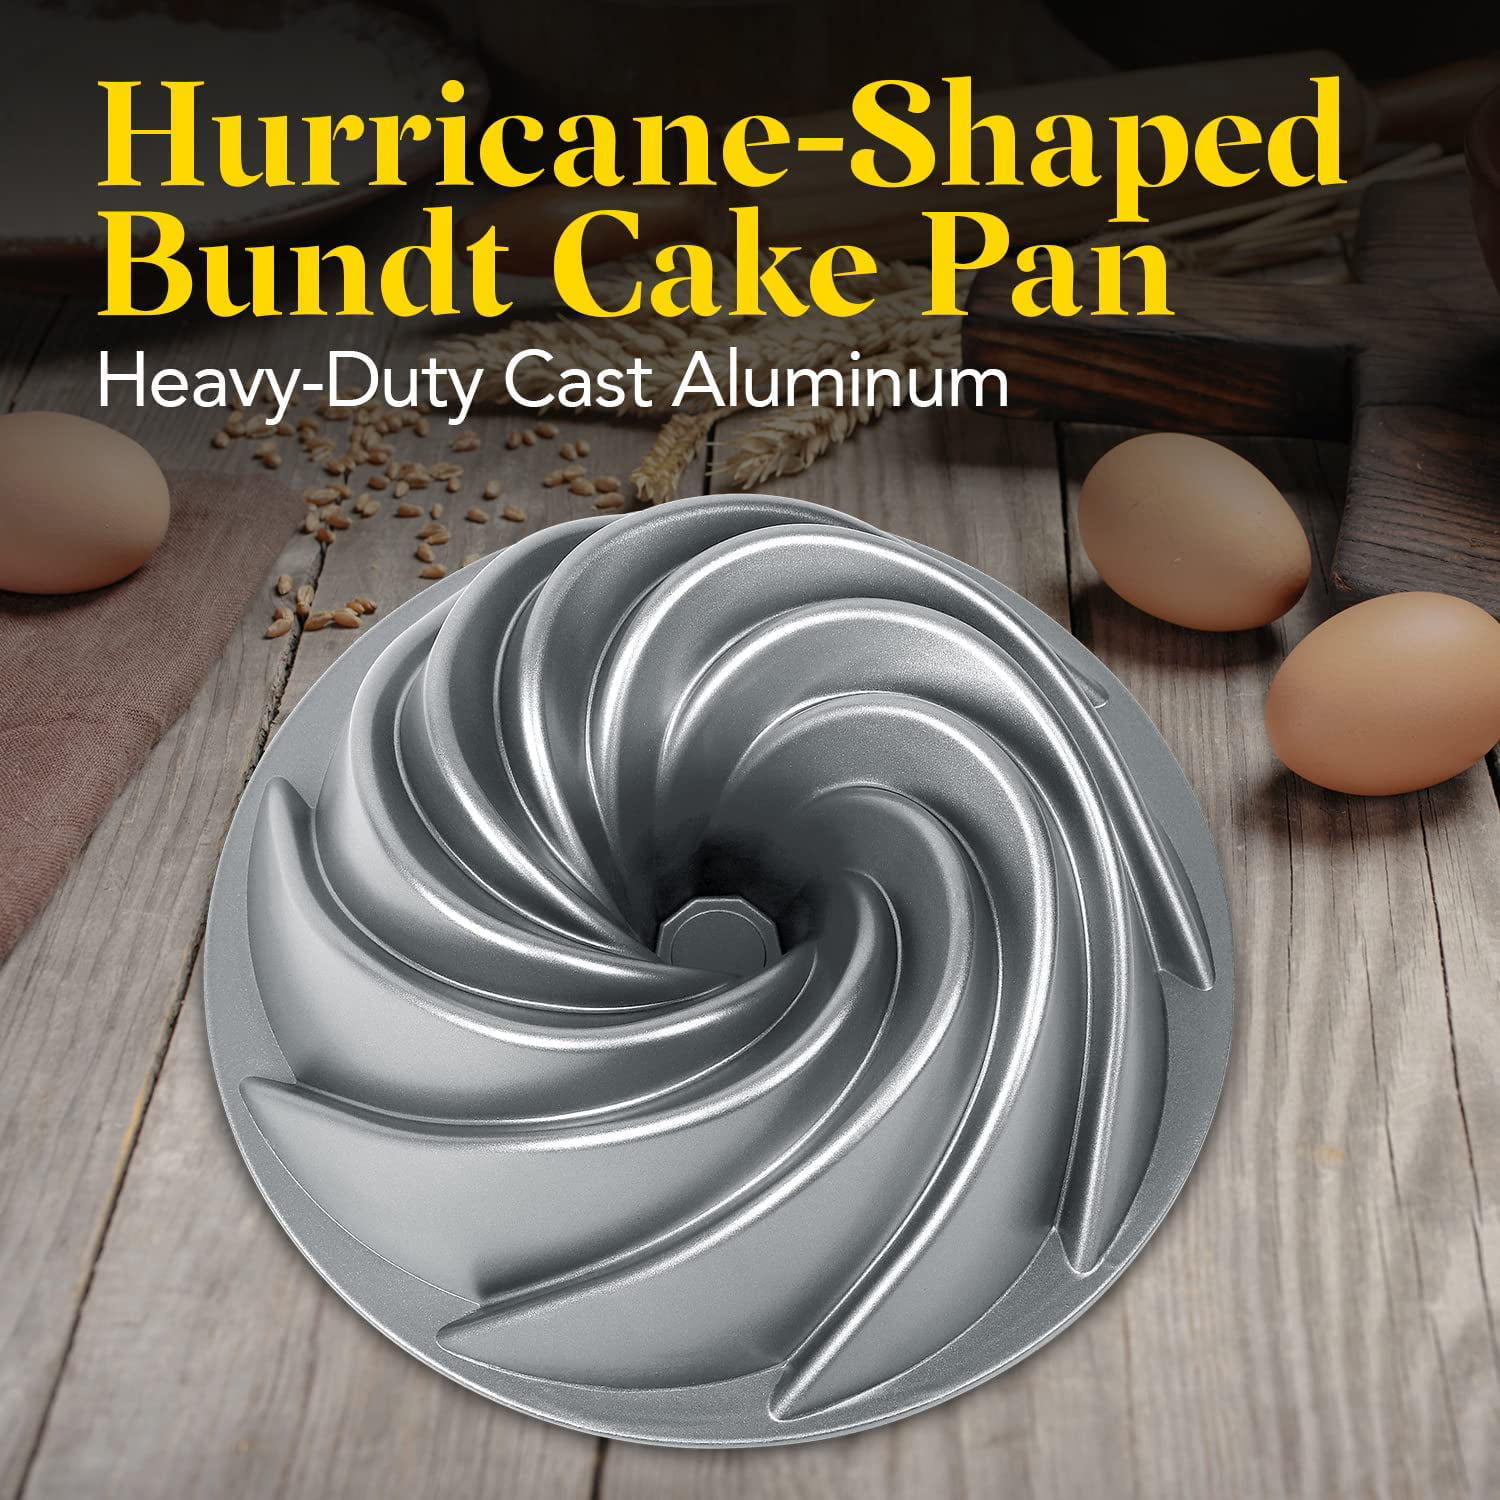 Seenda 9-Inch Non-Stick Fluted Bundt Cake Pan Round